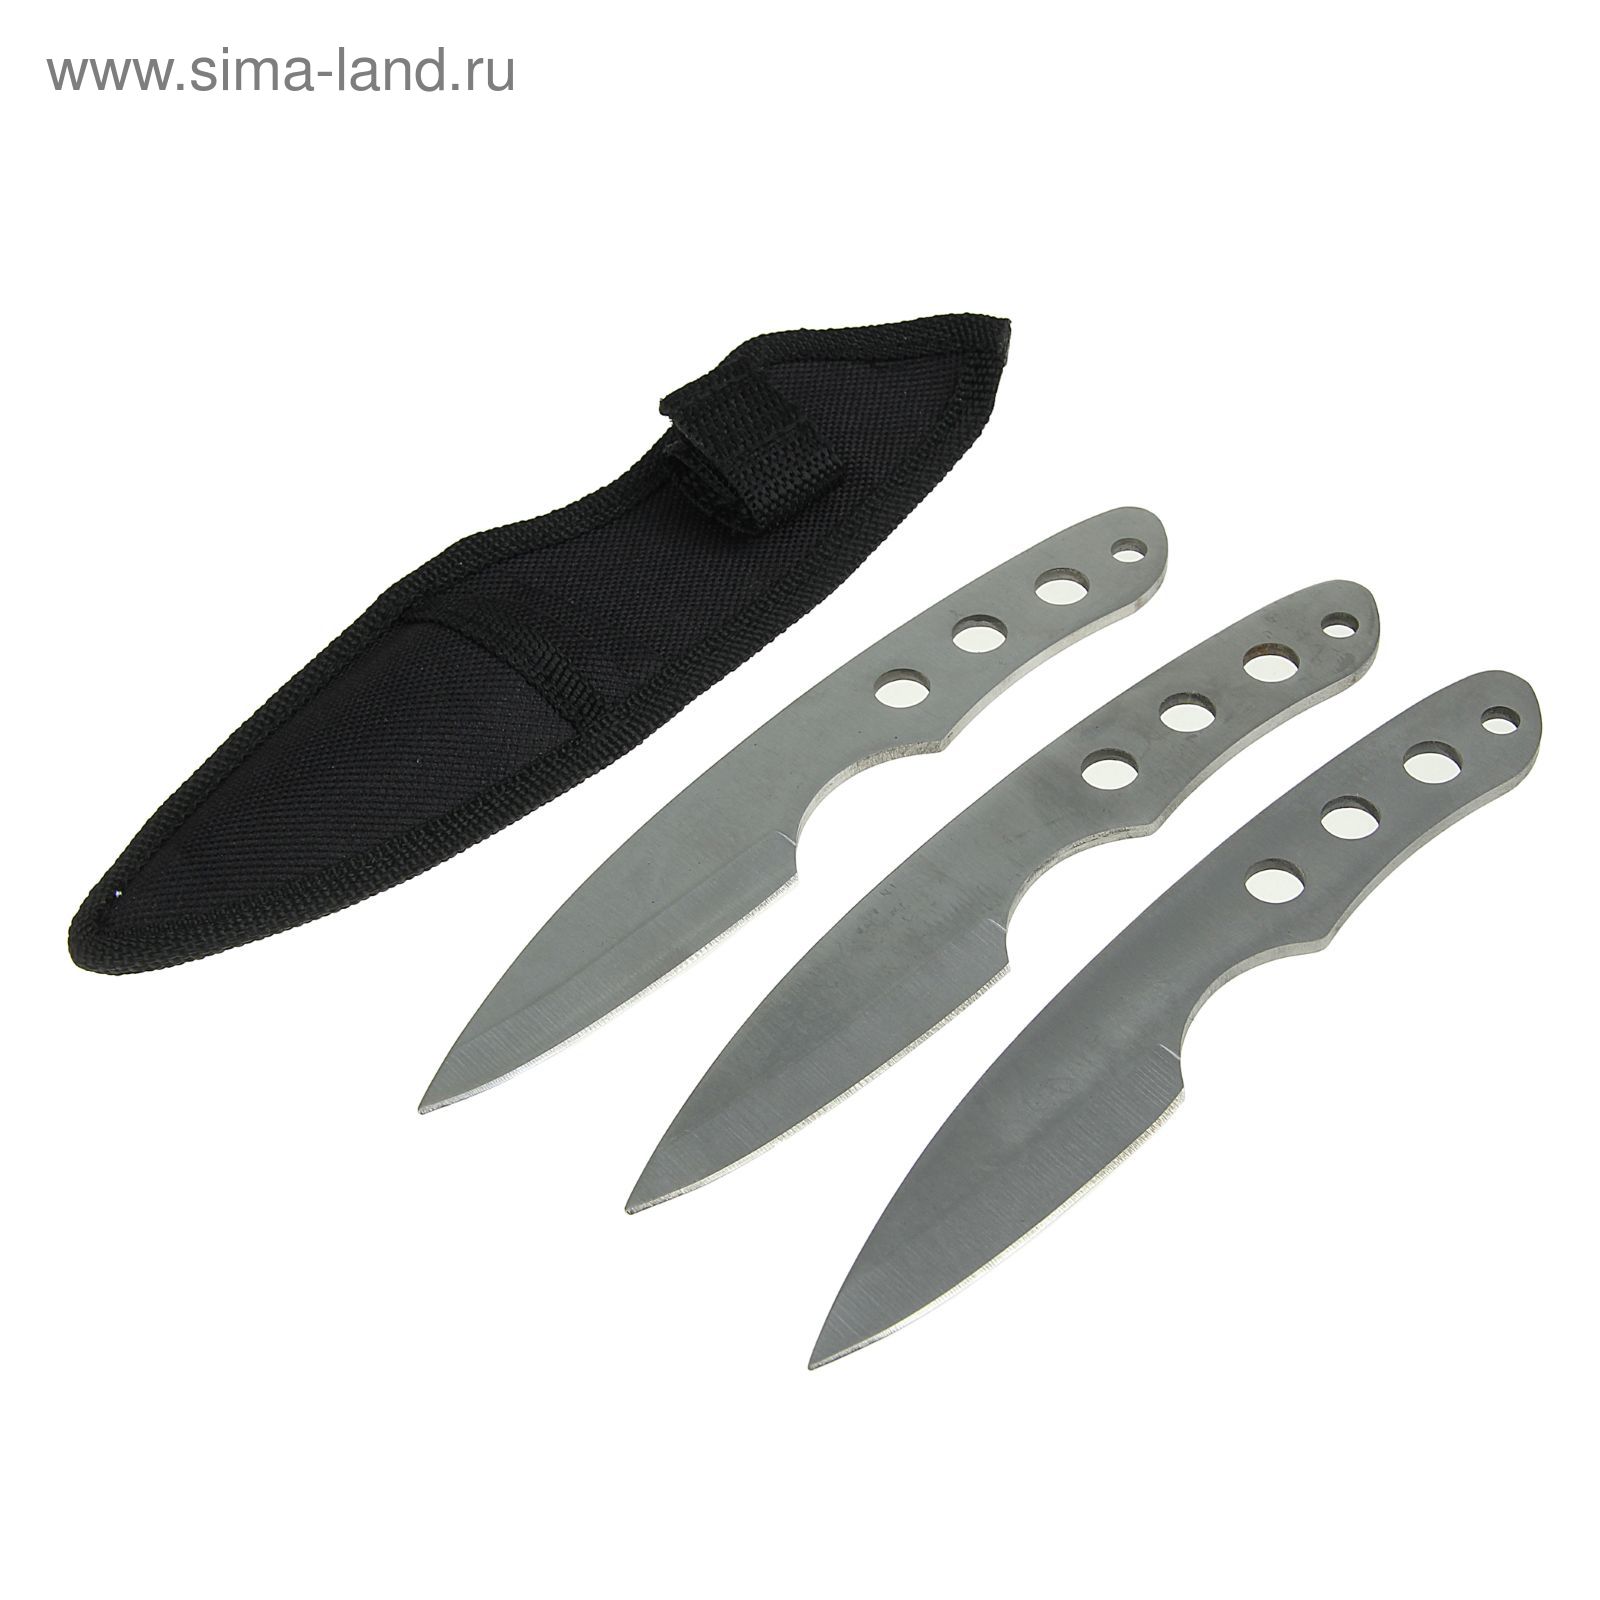 Набор ножей в чехле, 3 шт., лезвие drop-point, 15 см, хром, 4 отверстия на рукояти